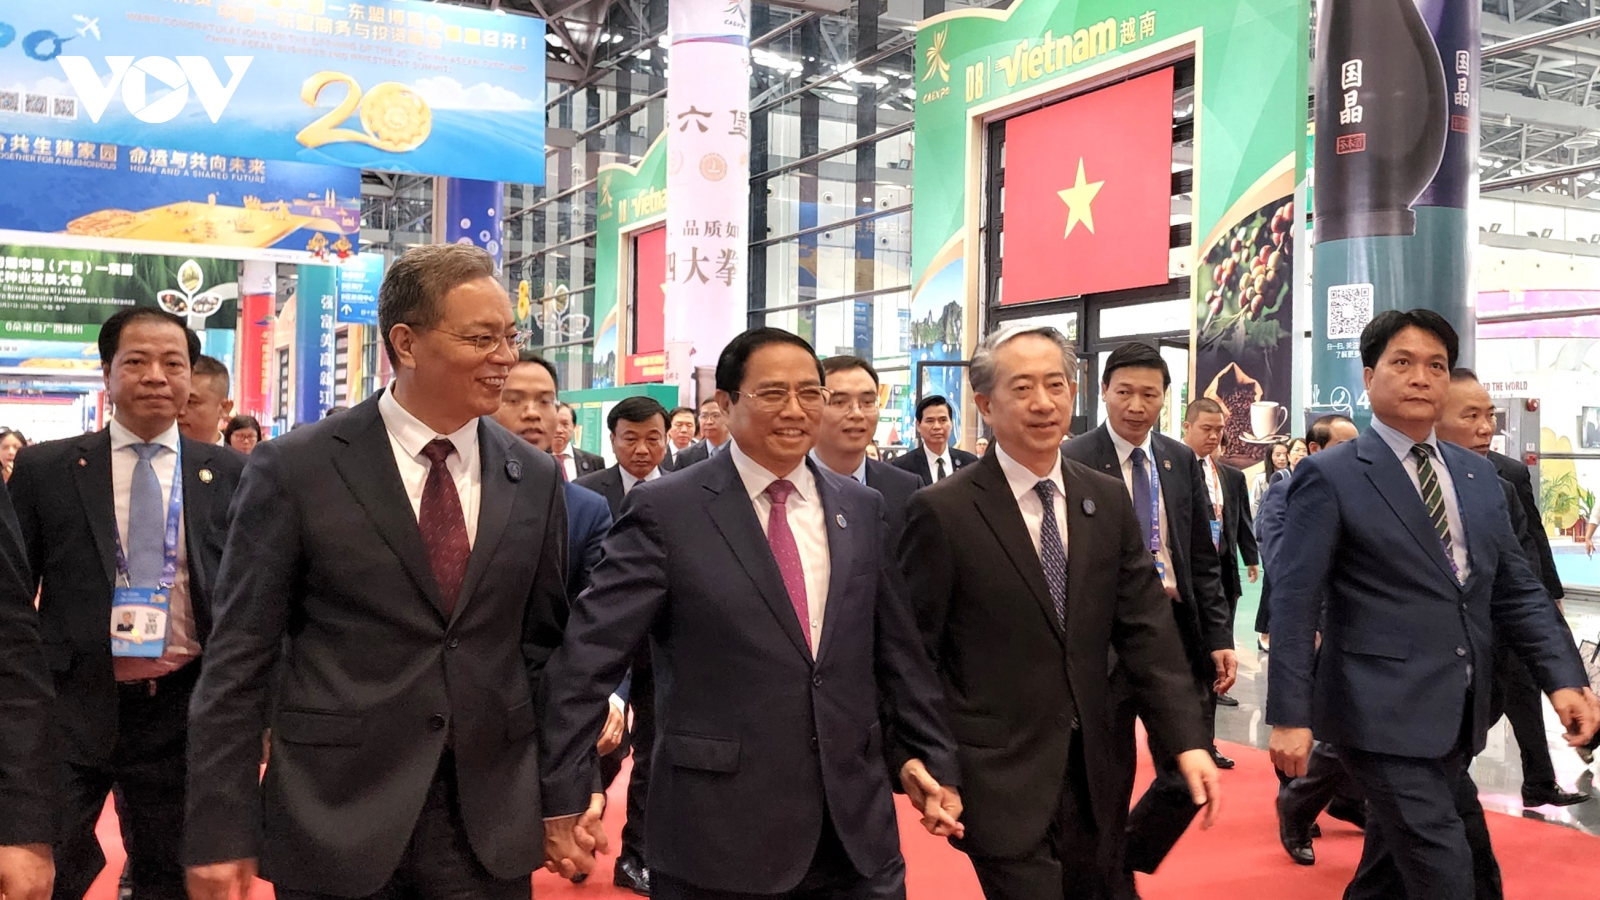 Thủ tướng Phạm Minh Chính dự và phát biểu tại Lễ Khai mạc Hội chợ CAEXPO